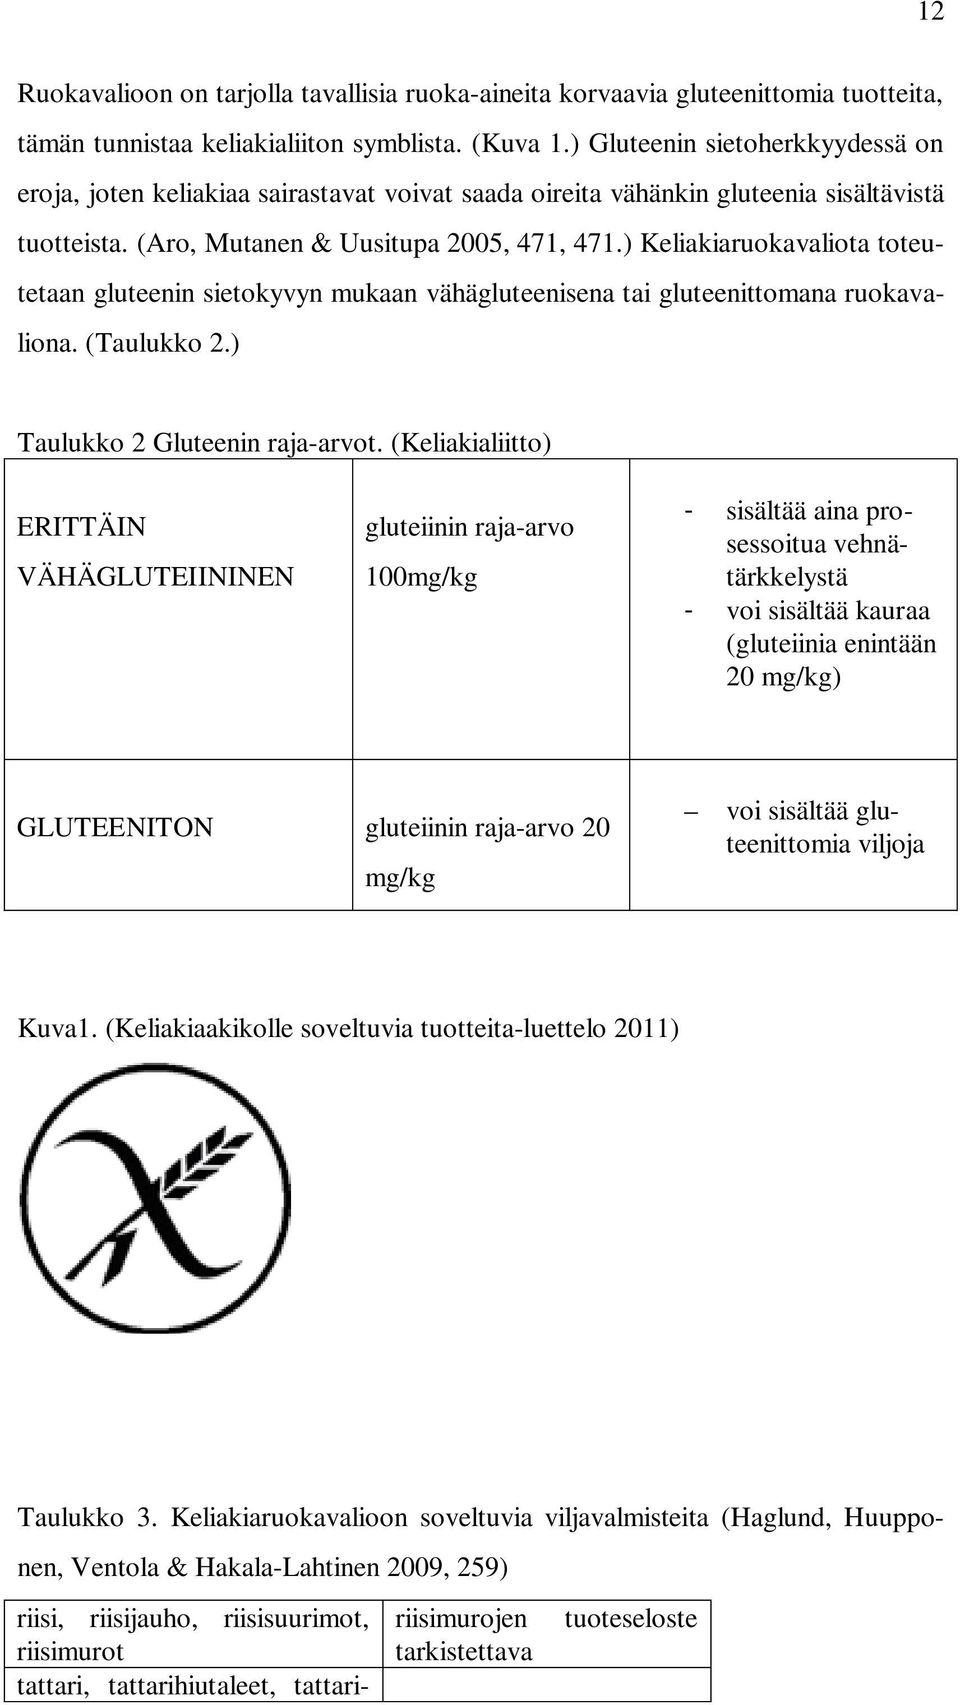 ) Keliakiaruokavaliota toteutetaan gluteenin sietokyvyn mukaan vähägluteenisena tai gluteenittomana ruokavaliona. (Taulukko 2.) Taulukko 2 Gluteenin raja-arvot.